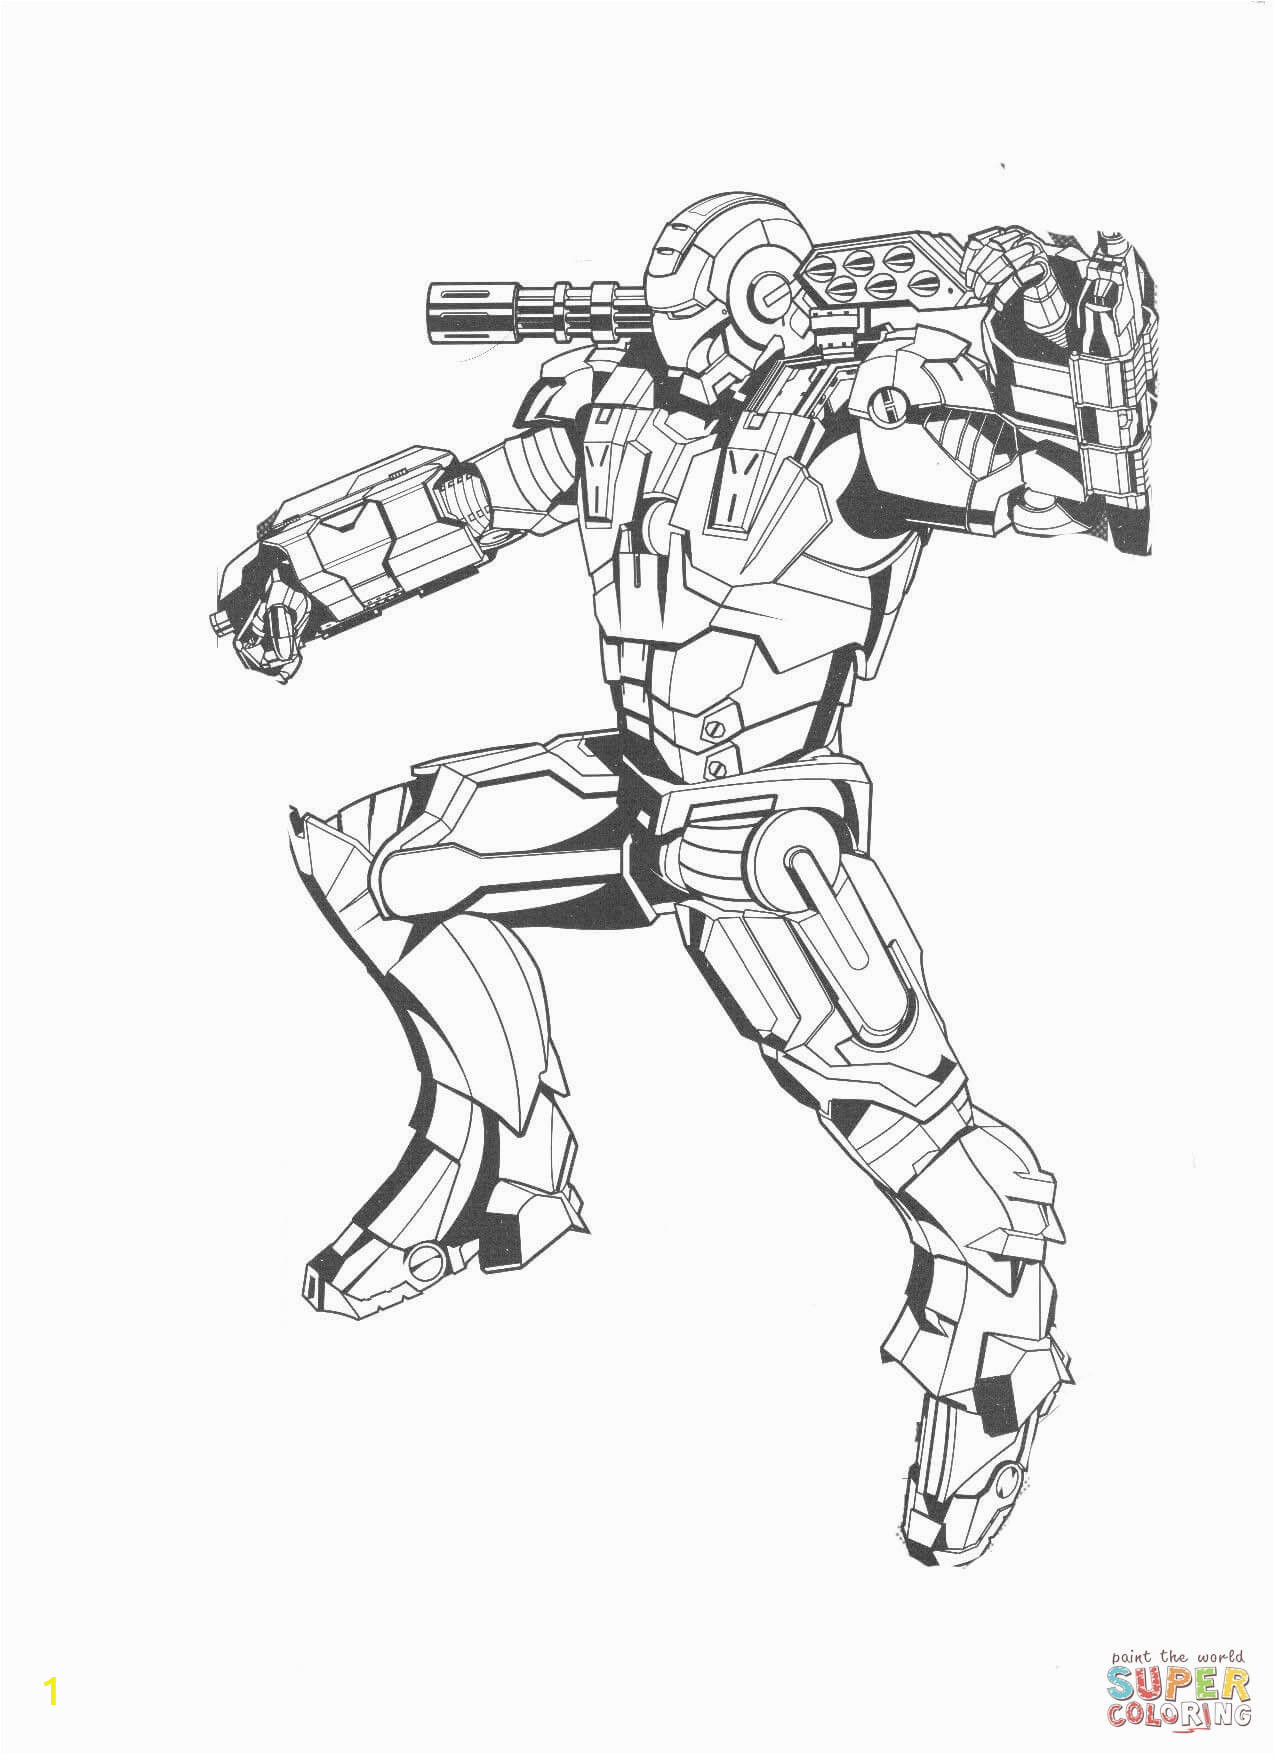 Iron Man Drawing for Coloring Ein Bild Zeichnen Juni 2019